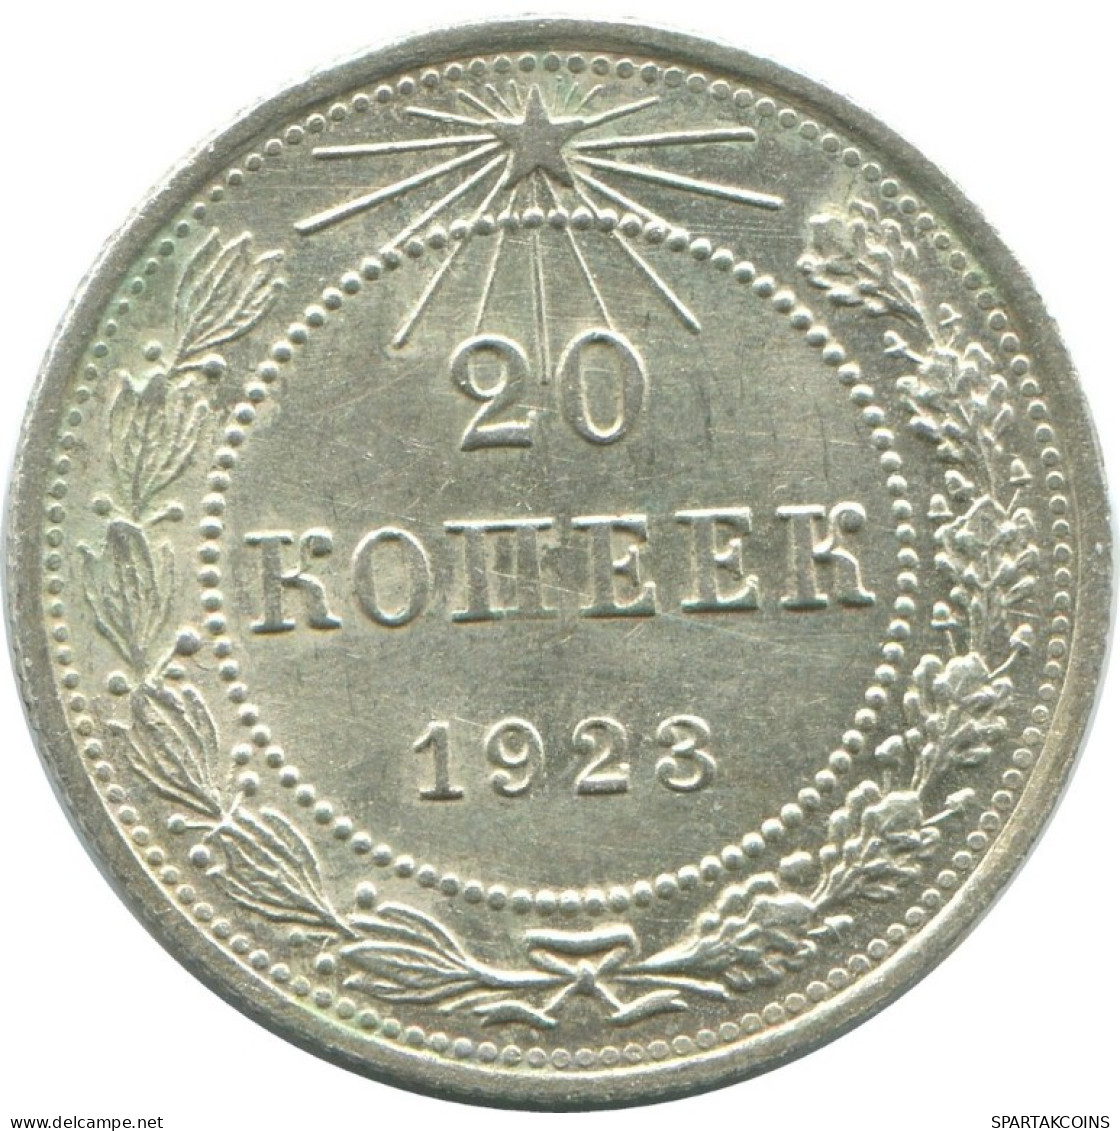 20 KOPEKS 1923 RUSIA RUSSIA RSFSR PLATA Moneda HIGH GRADE #AF684.E.A - Russland